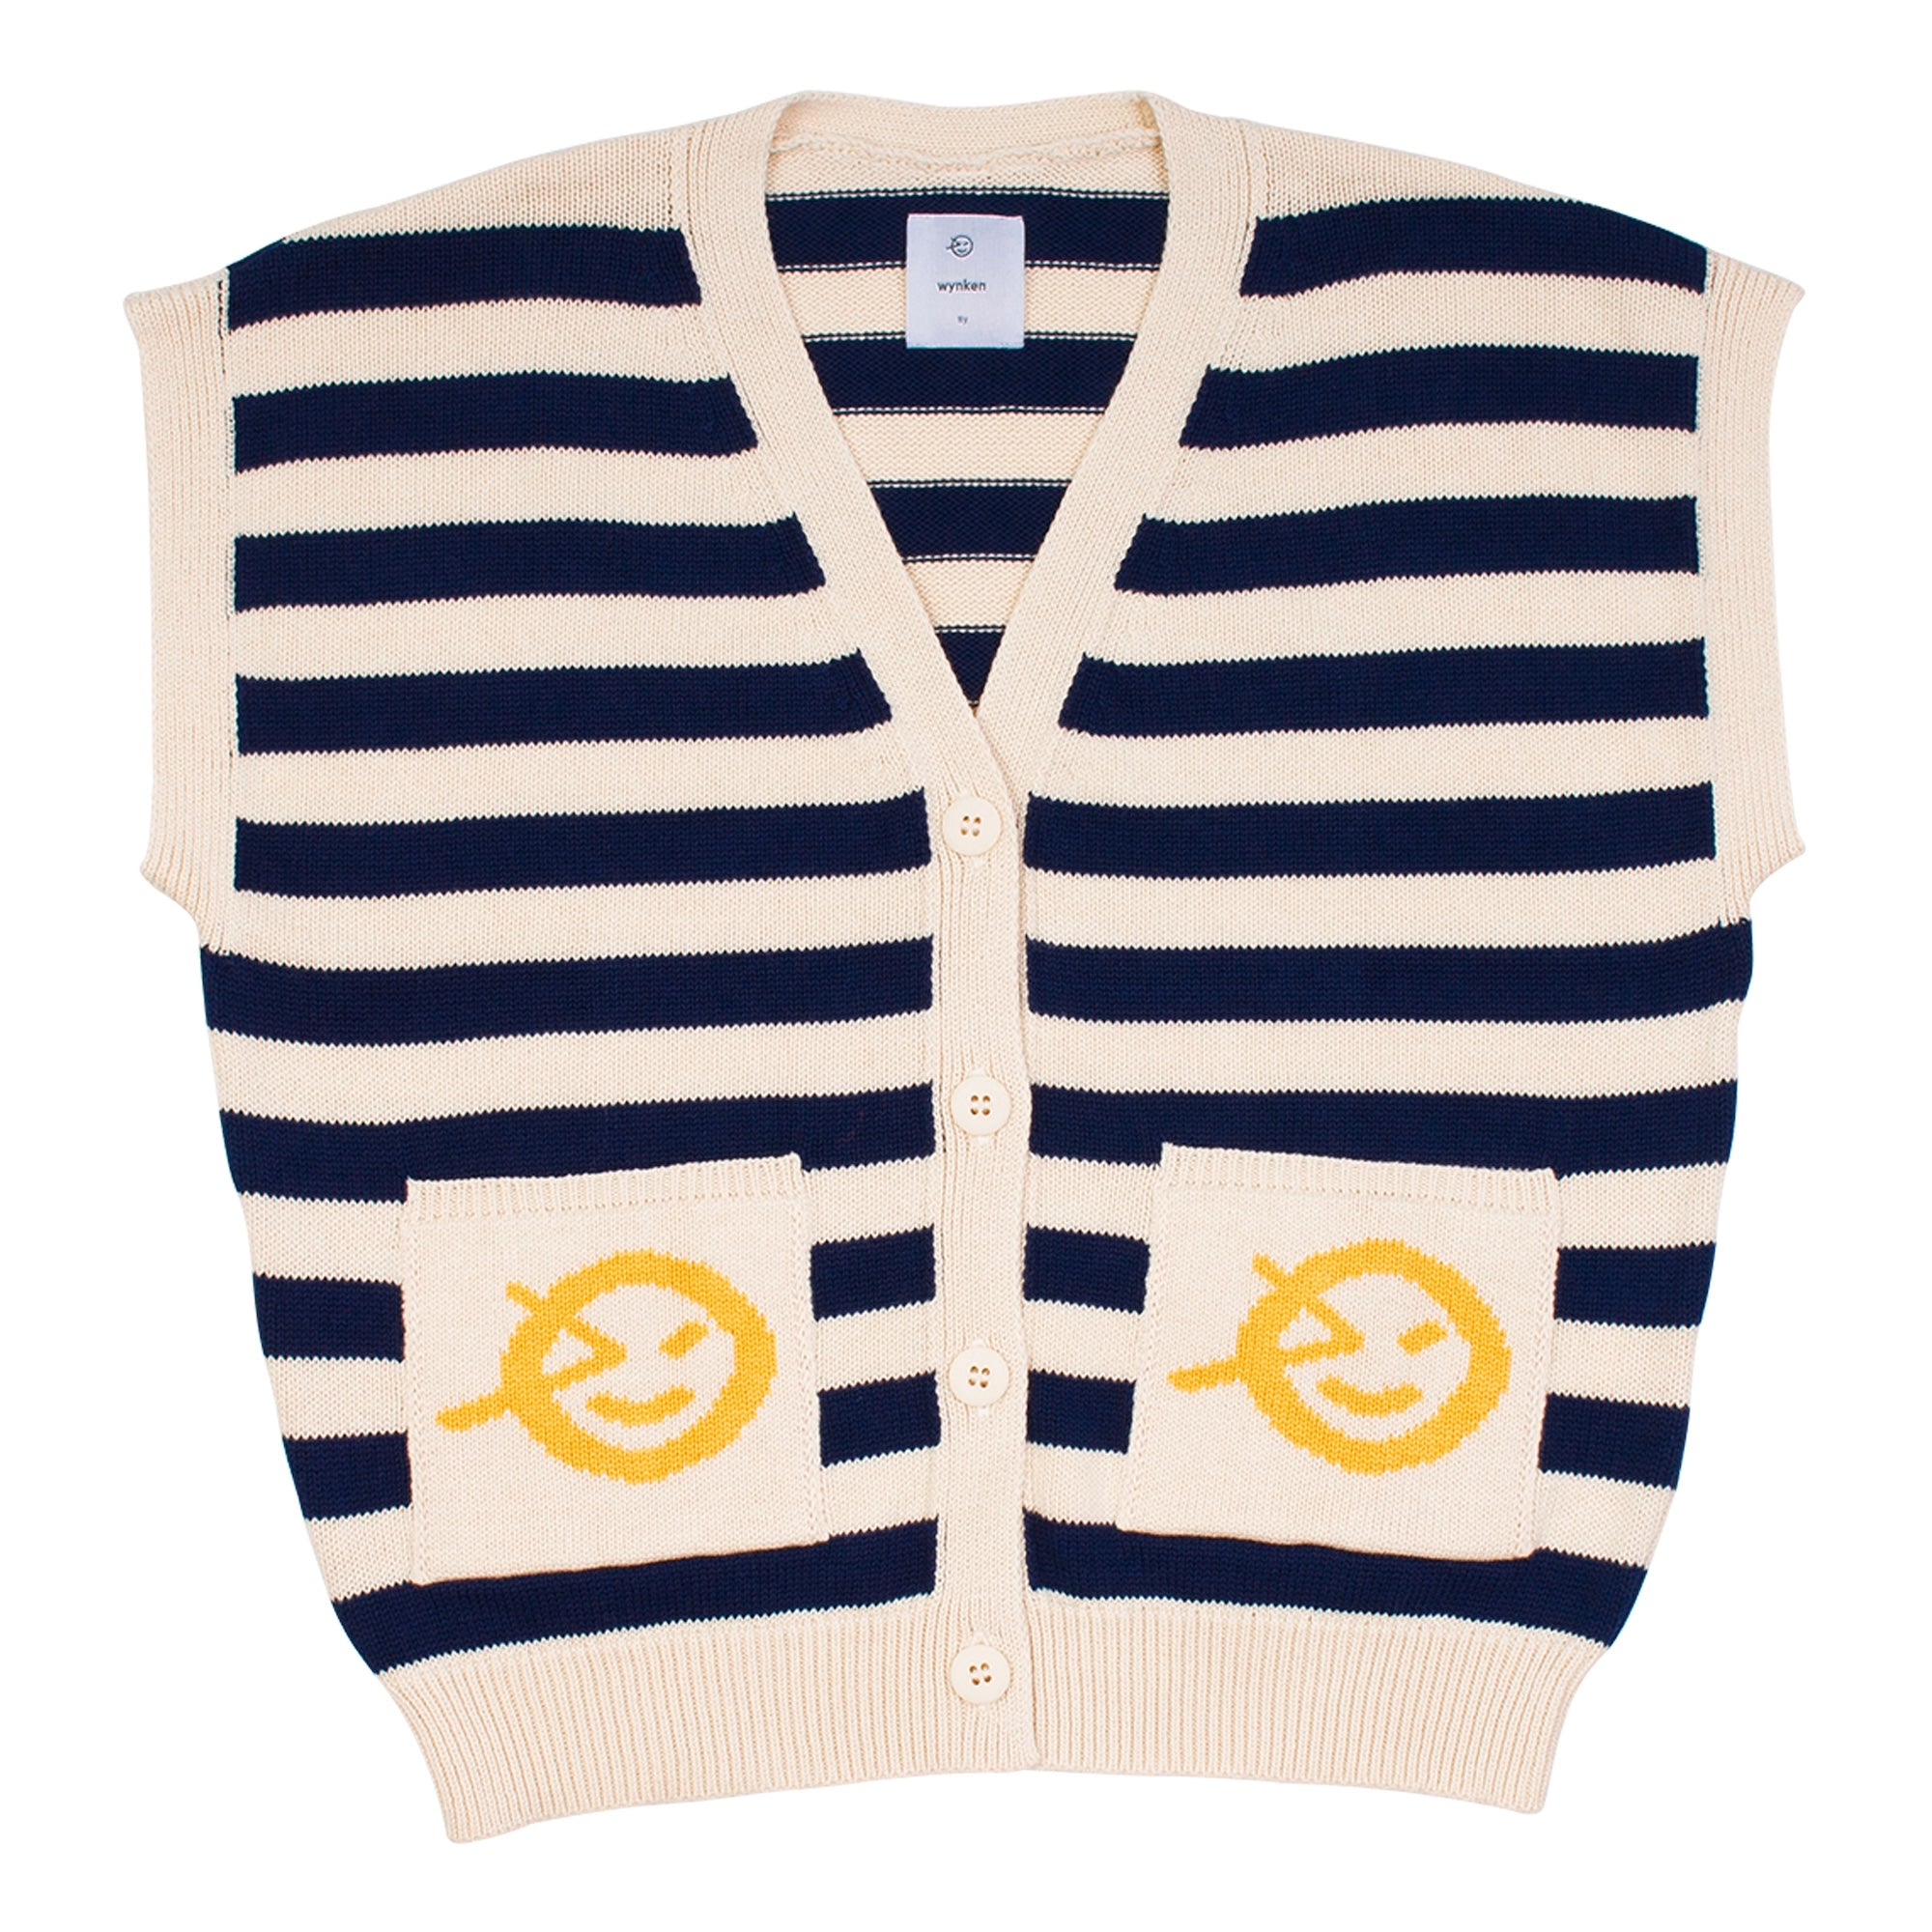 Wynken Stripe Waistcoat - Navy/Tide White